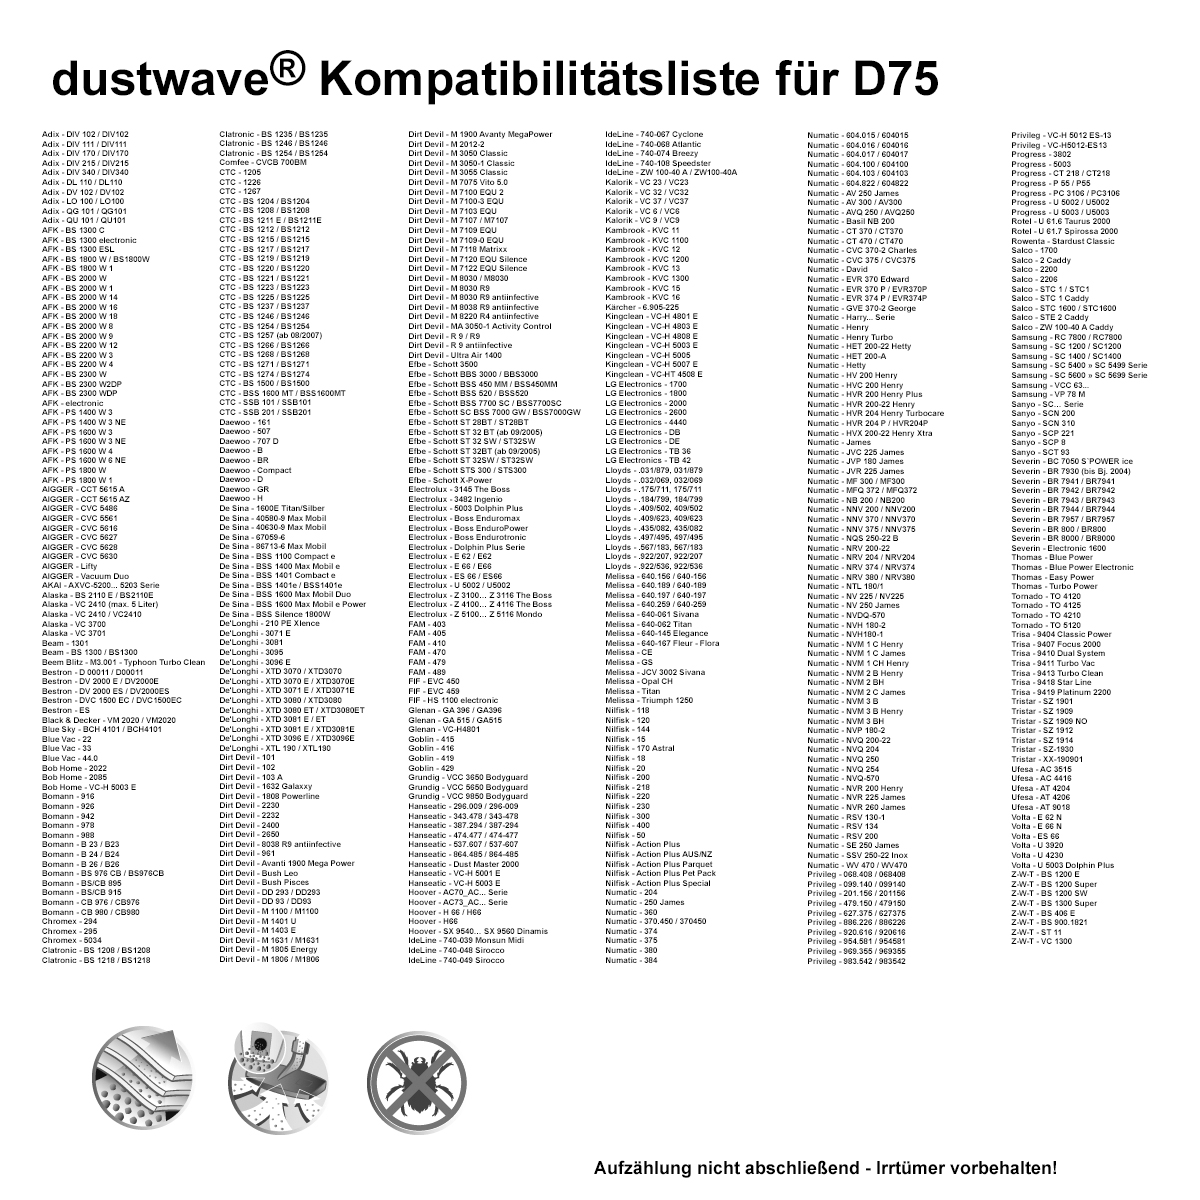 Dustwave® 20 Staubsaugerbeutel für AmazonBasics W11 - hocheffizient mit Hygieneverschluss - Made in Germany